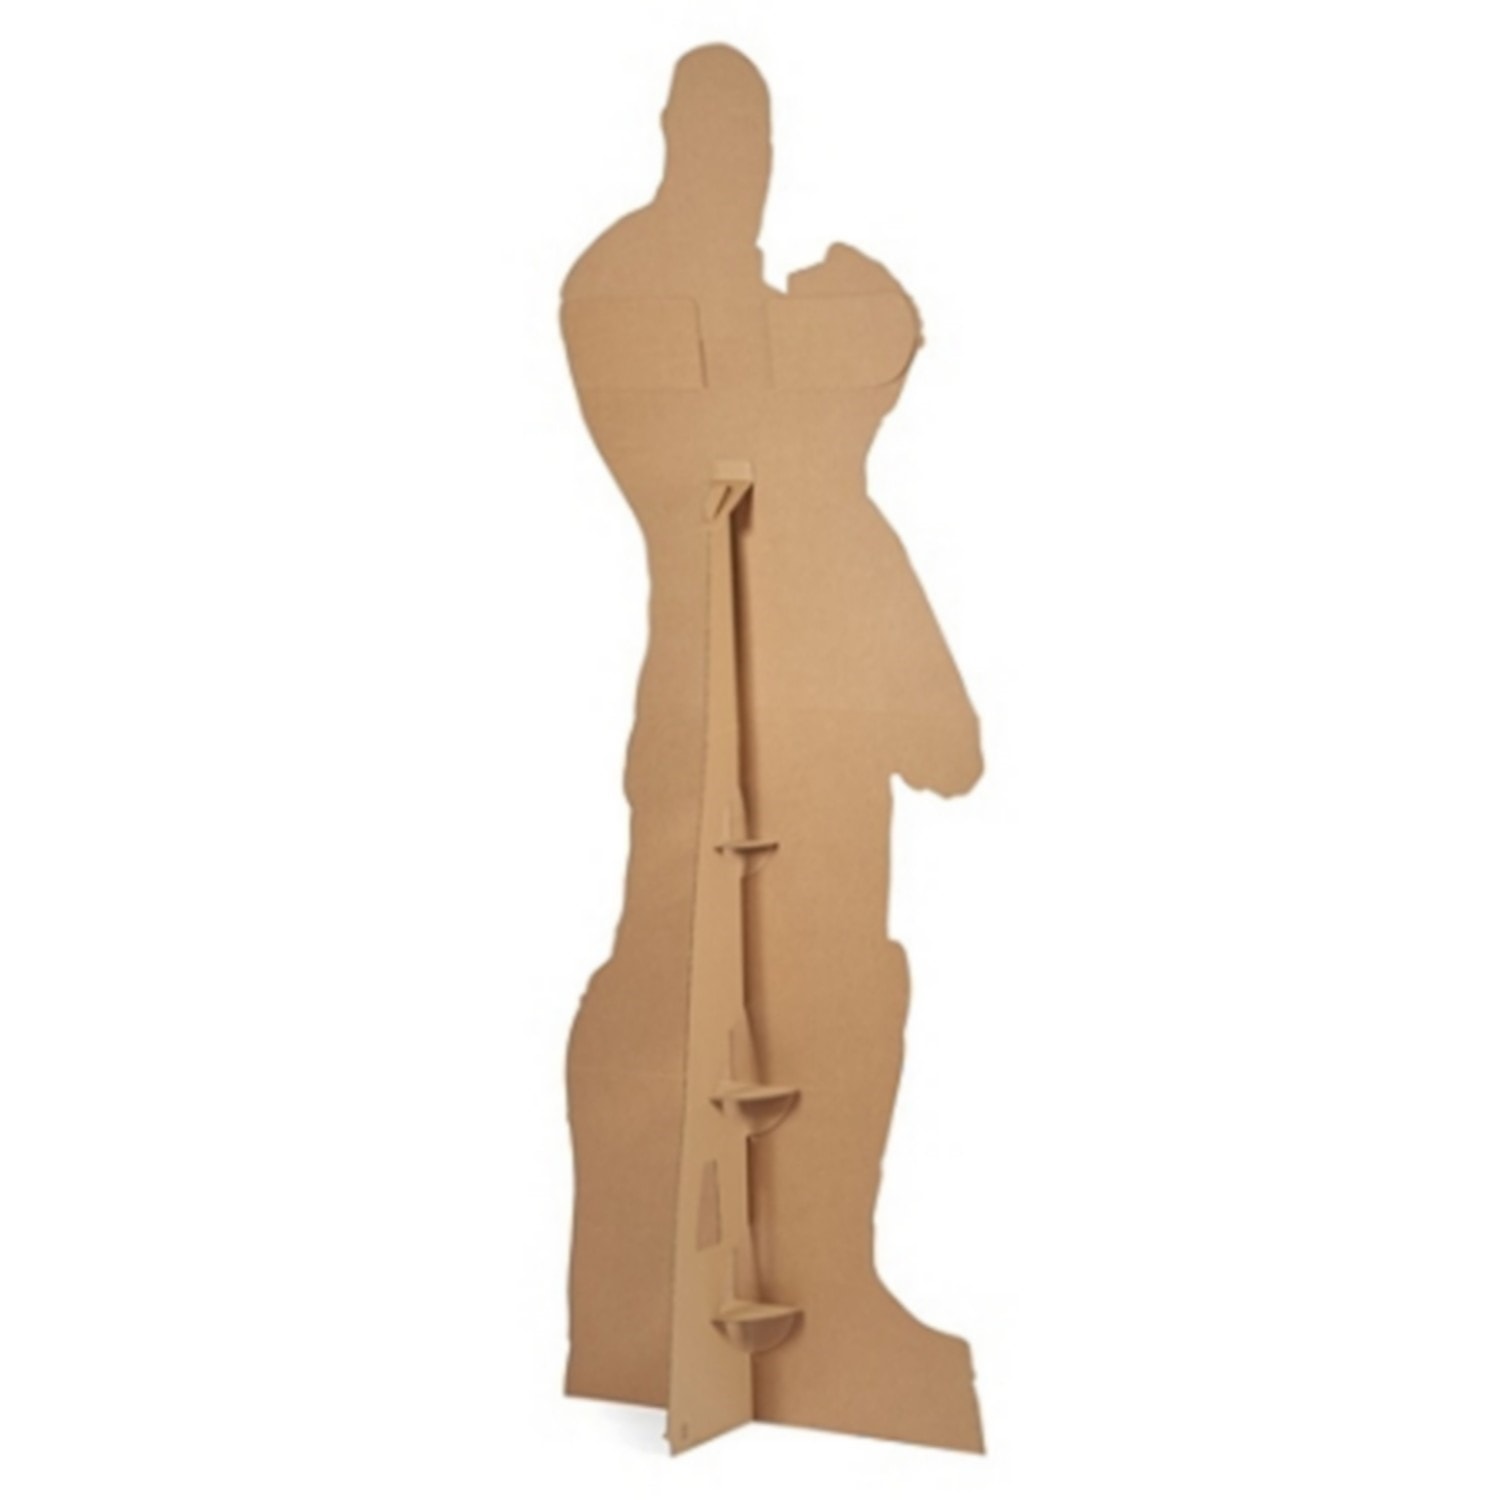 Figurine en carton Olaf La Reine des Neiges Disney -Haut 89 cm